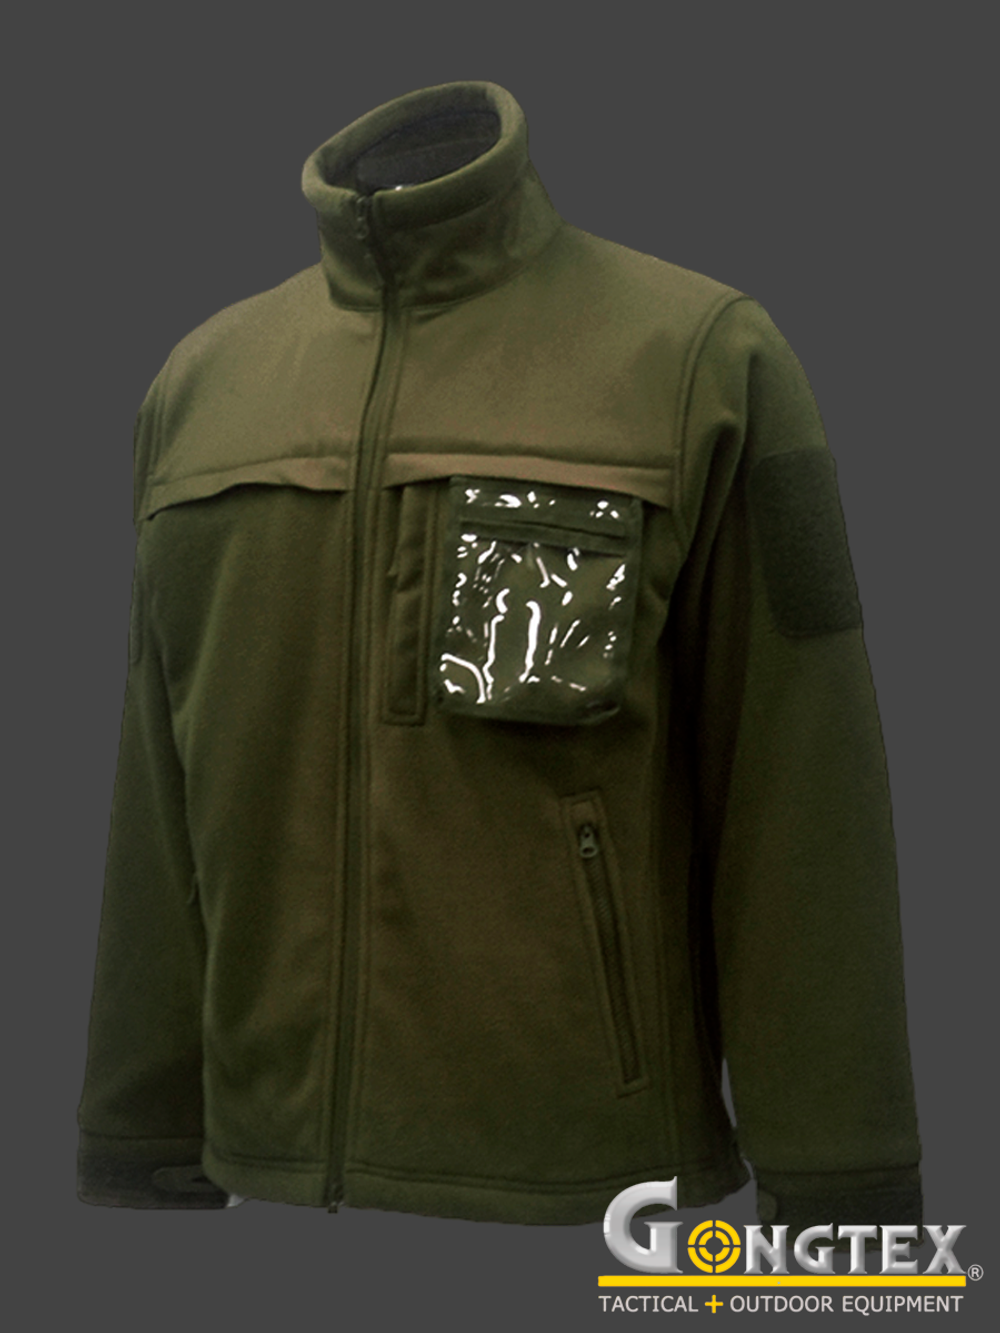 Куртка флисовая Gongtex Ranger Fleece Jacket. Олива